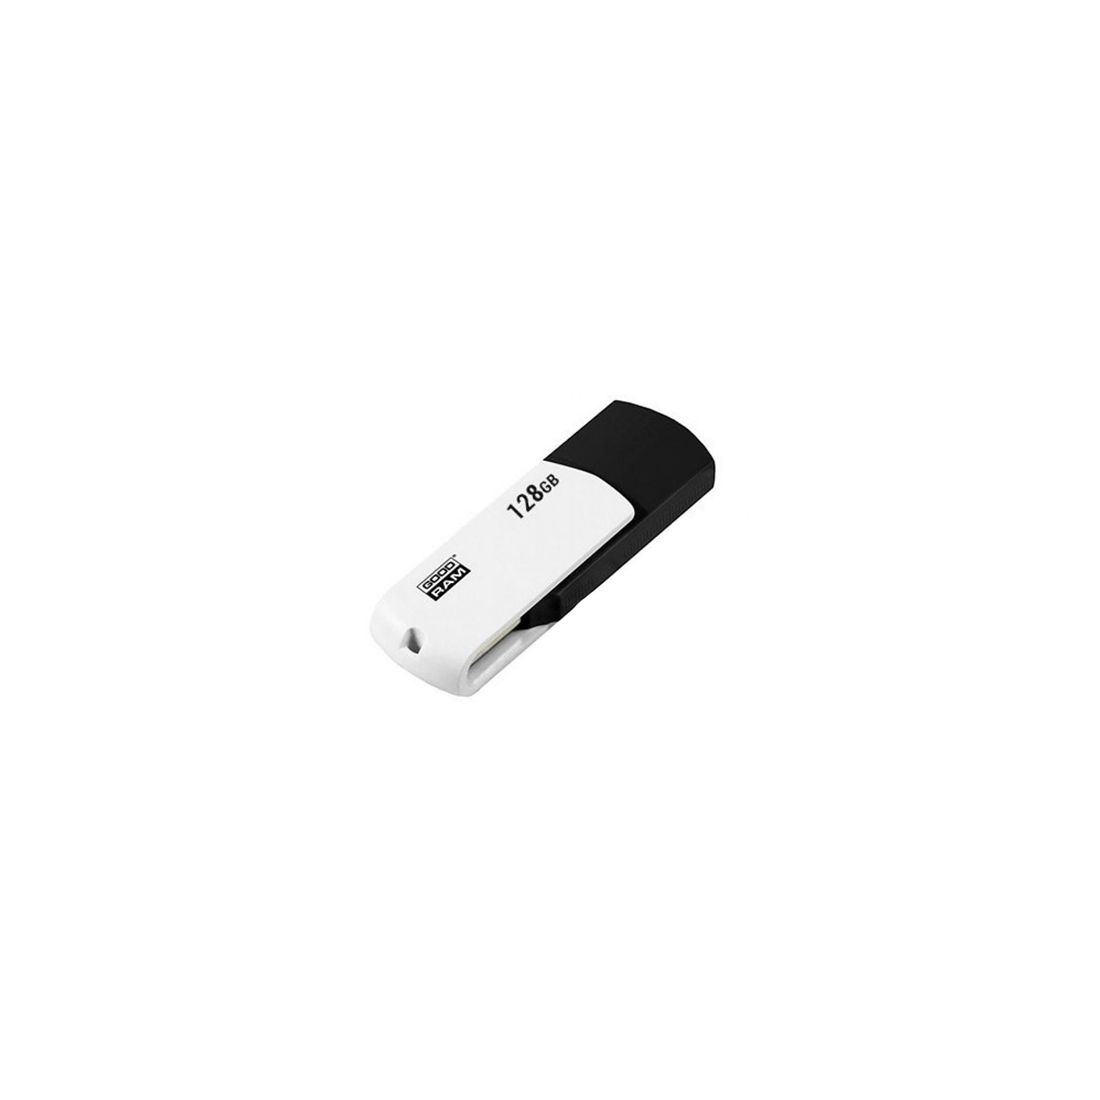 Goodram UCO2 Lapiz USB 128GB USB 20 Neg Blc